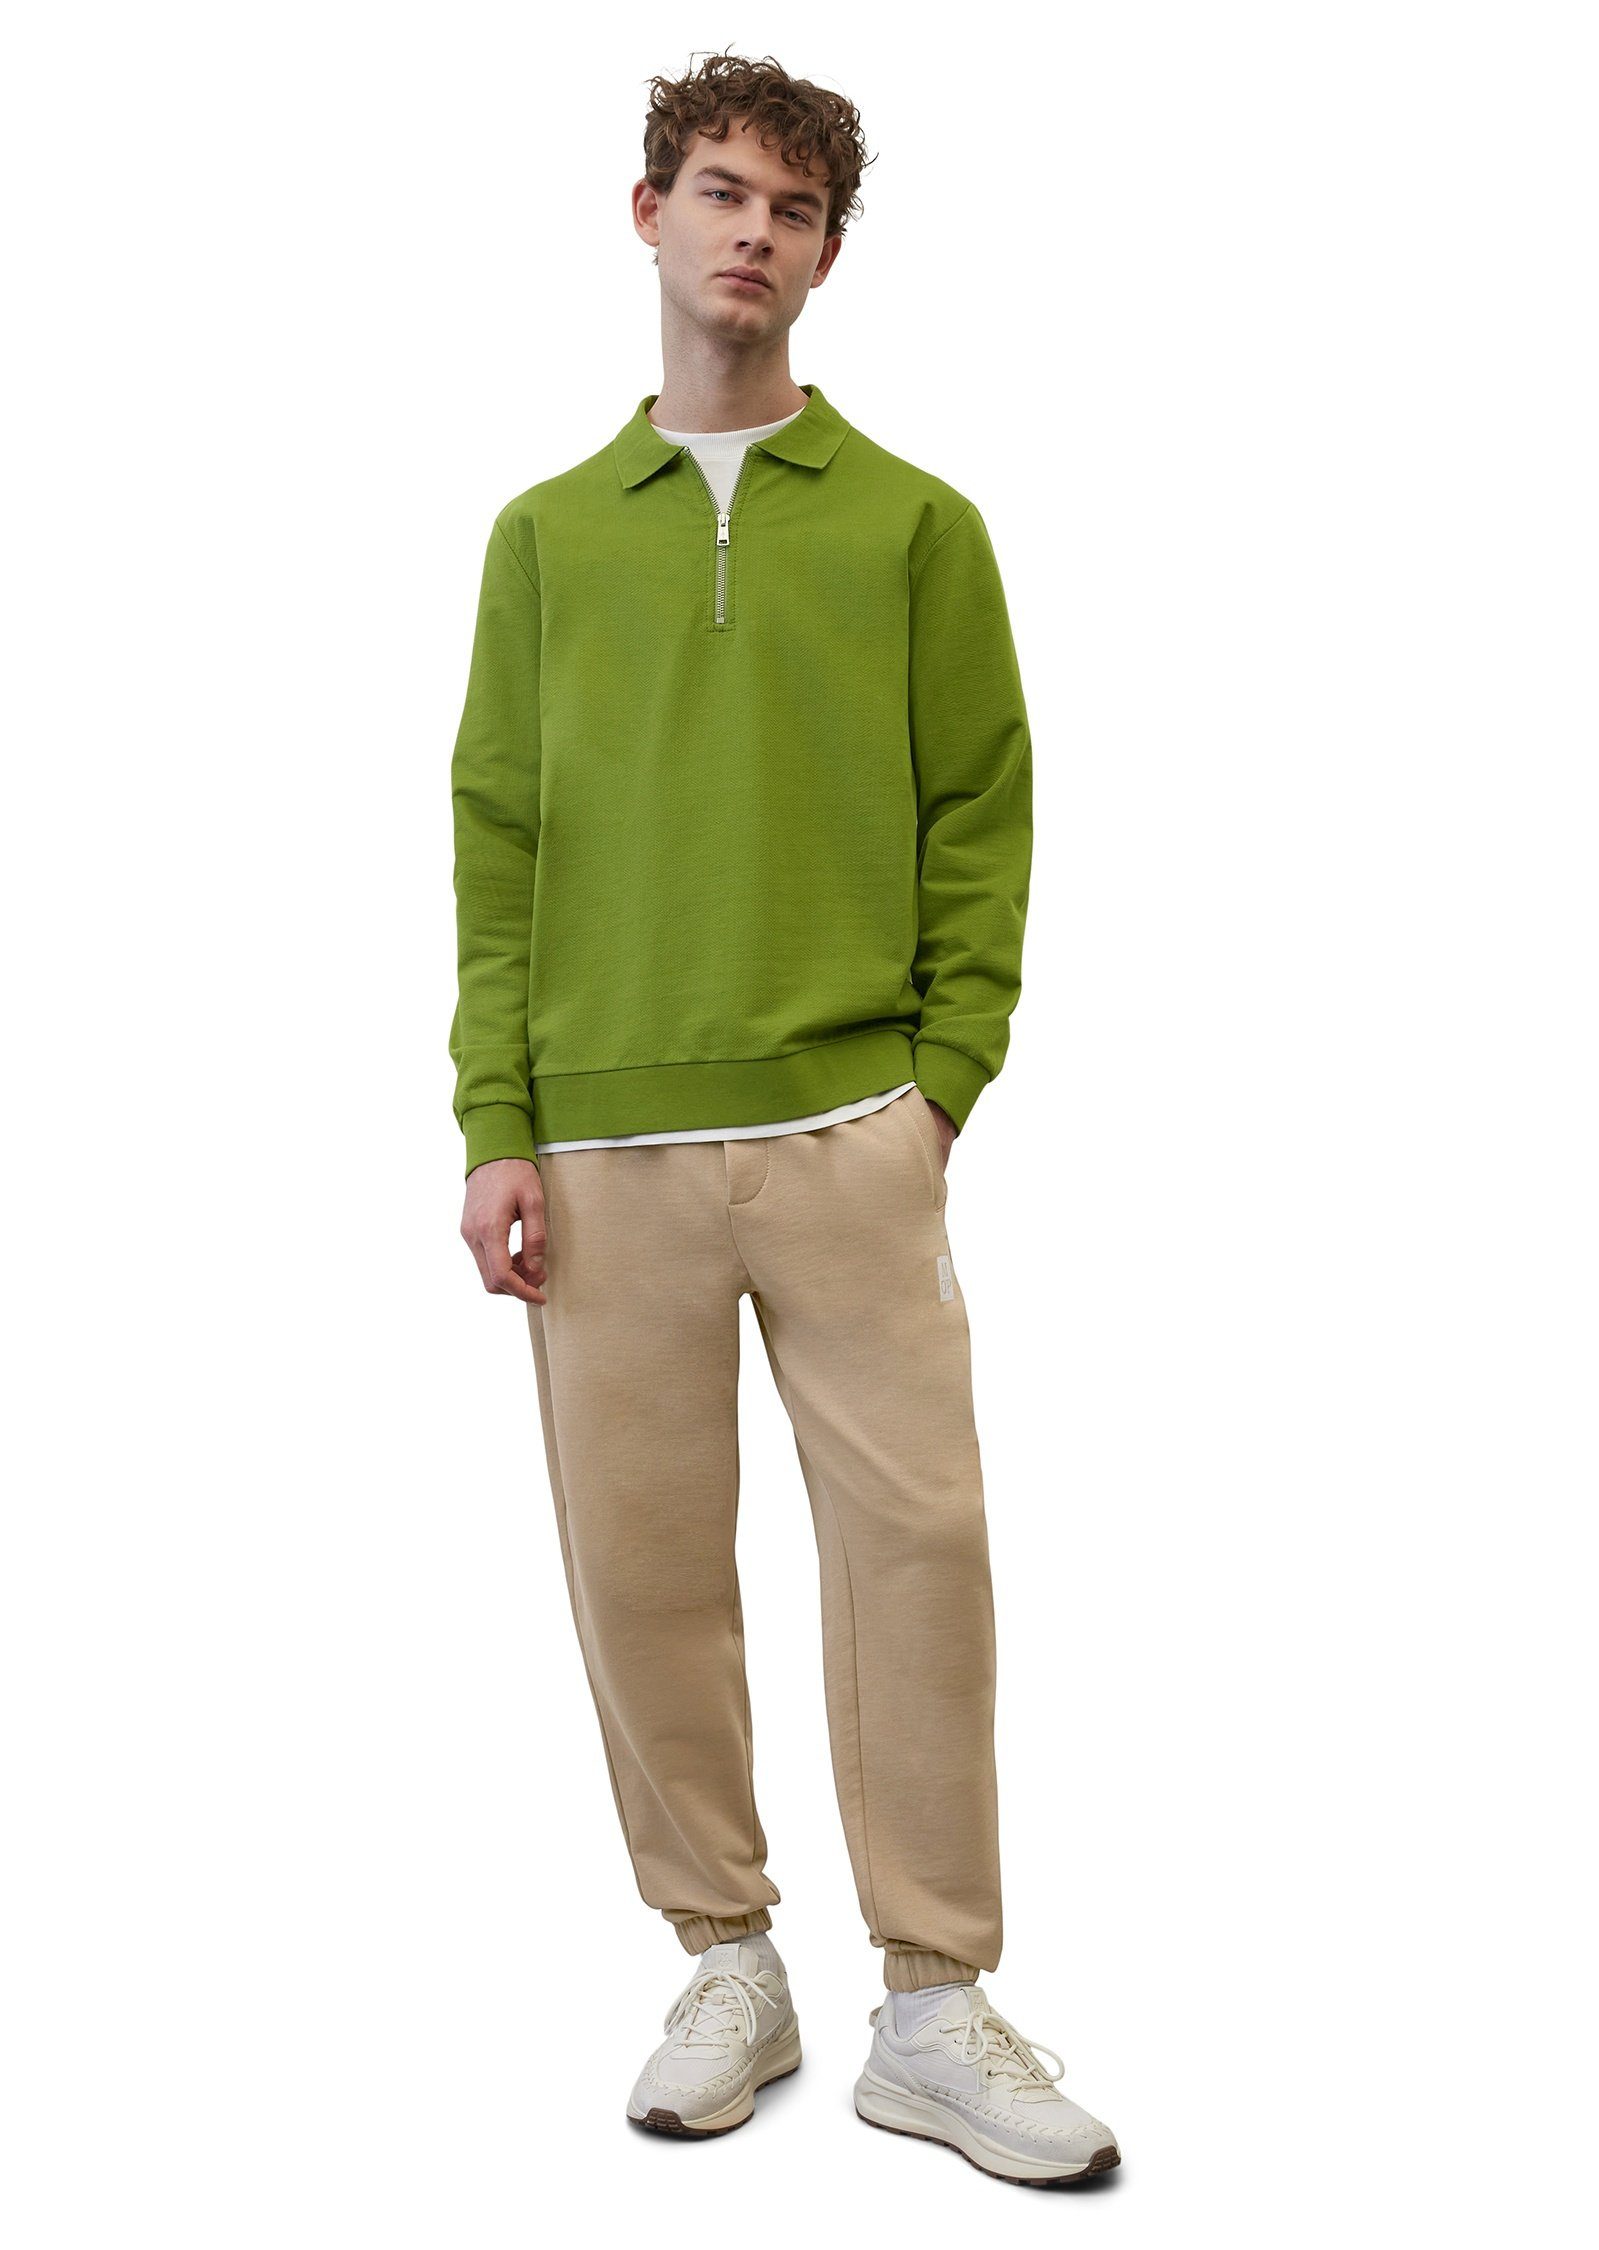 Marc O'Polo Sweatshirt mit grün hochwertigem Fischgrat-Muster